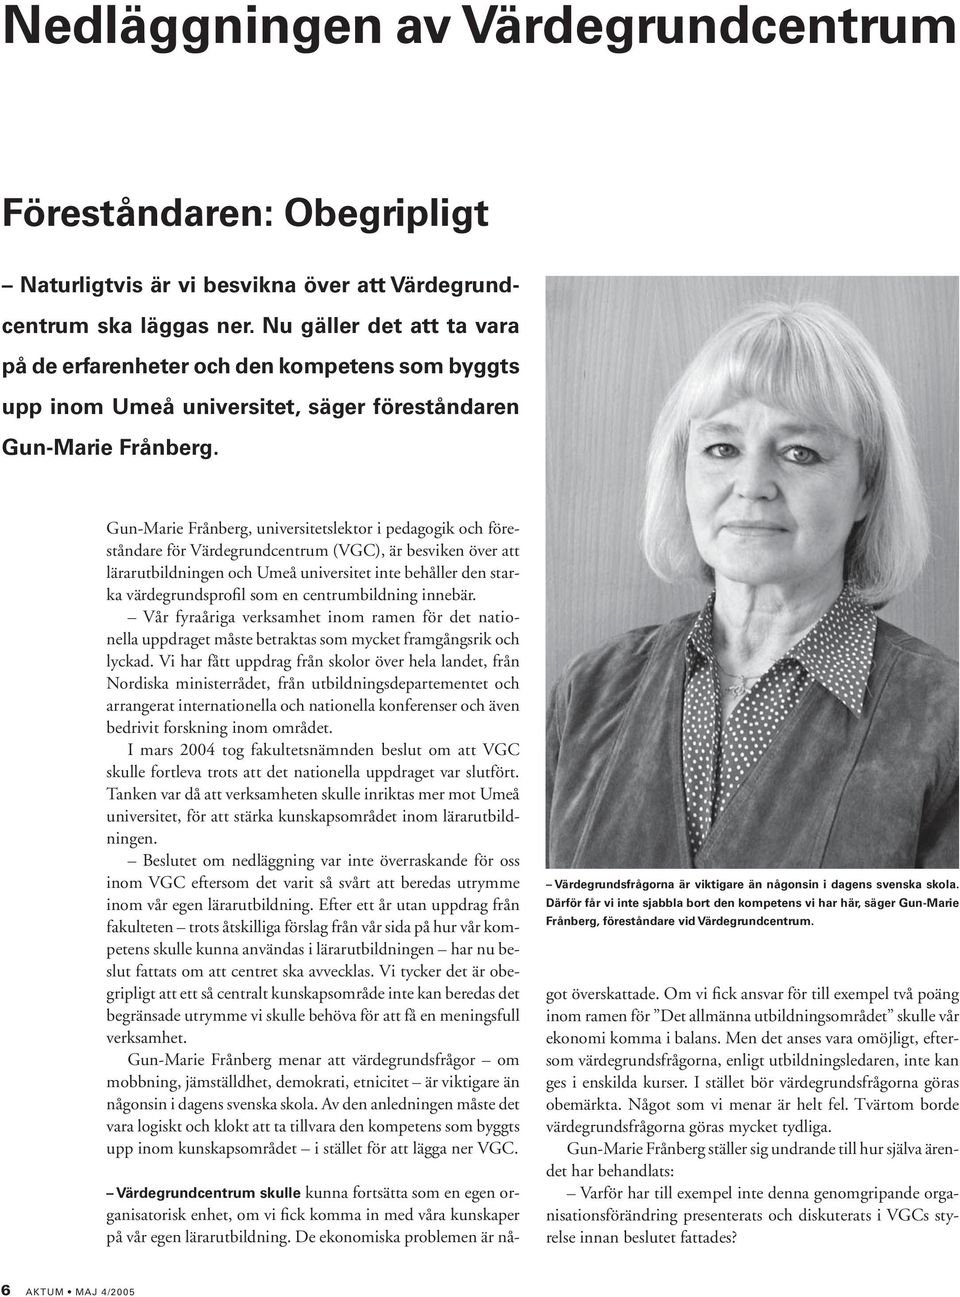 Gun-Marie Frånberg, universitetslektor i pedagogik och föreståndare för Värdegrundcentrum (VGC), är besviken över att lärarutbildningen och Umeå universitet inte behåller den starka värdegrundsprofil